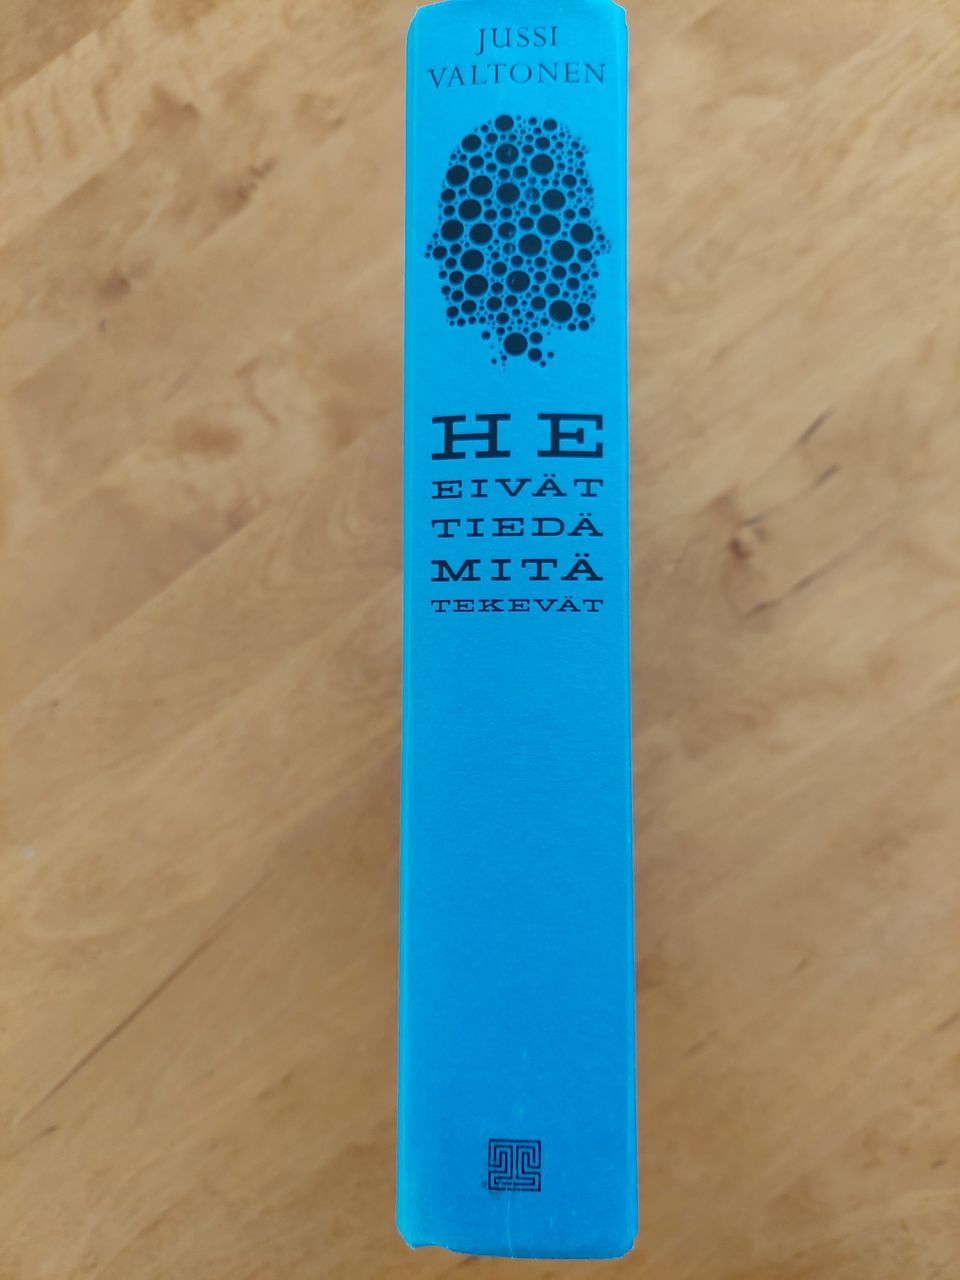 Finlandia-voittajan 2014 kirja